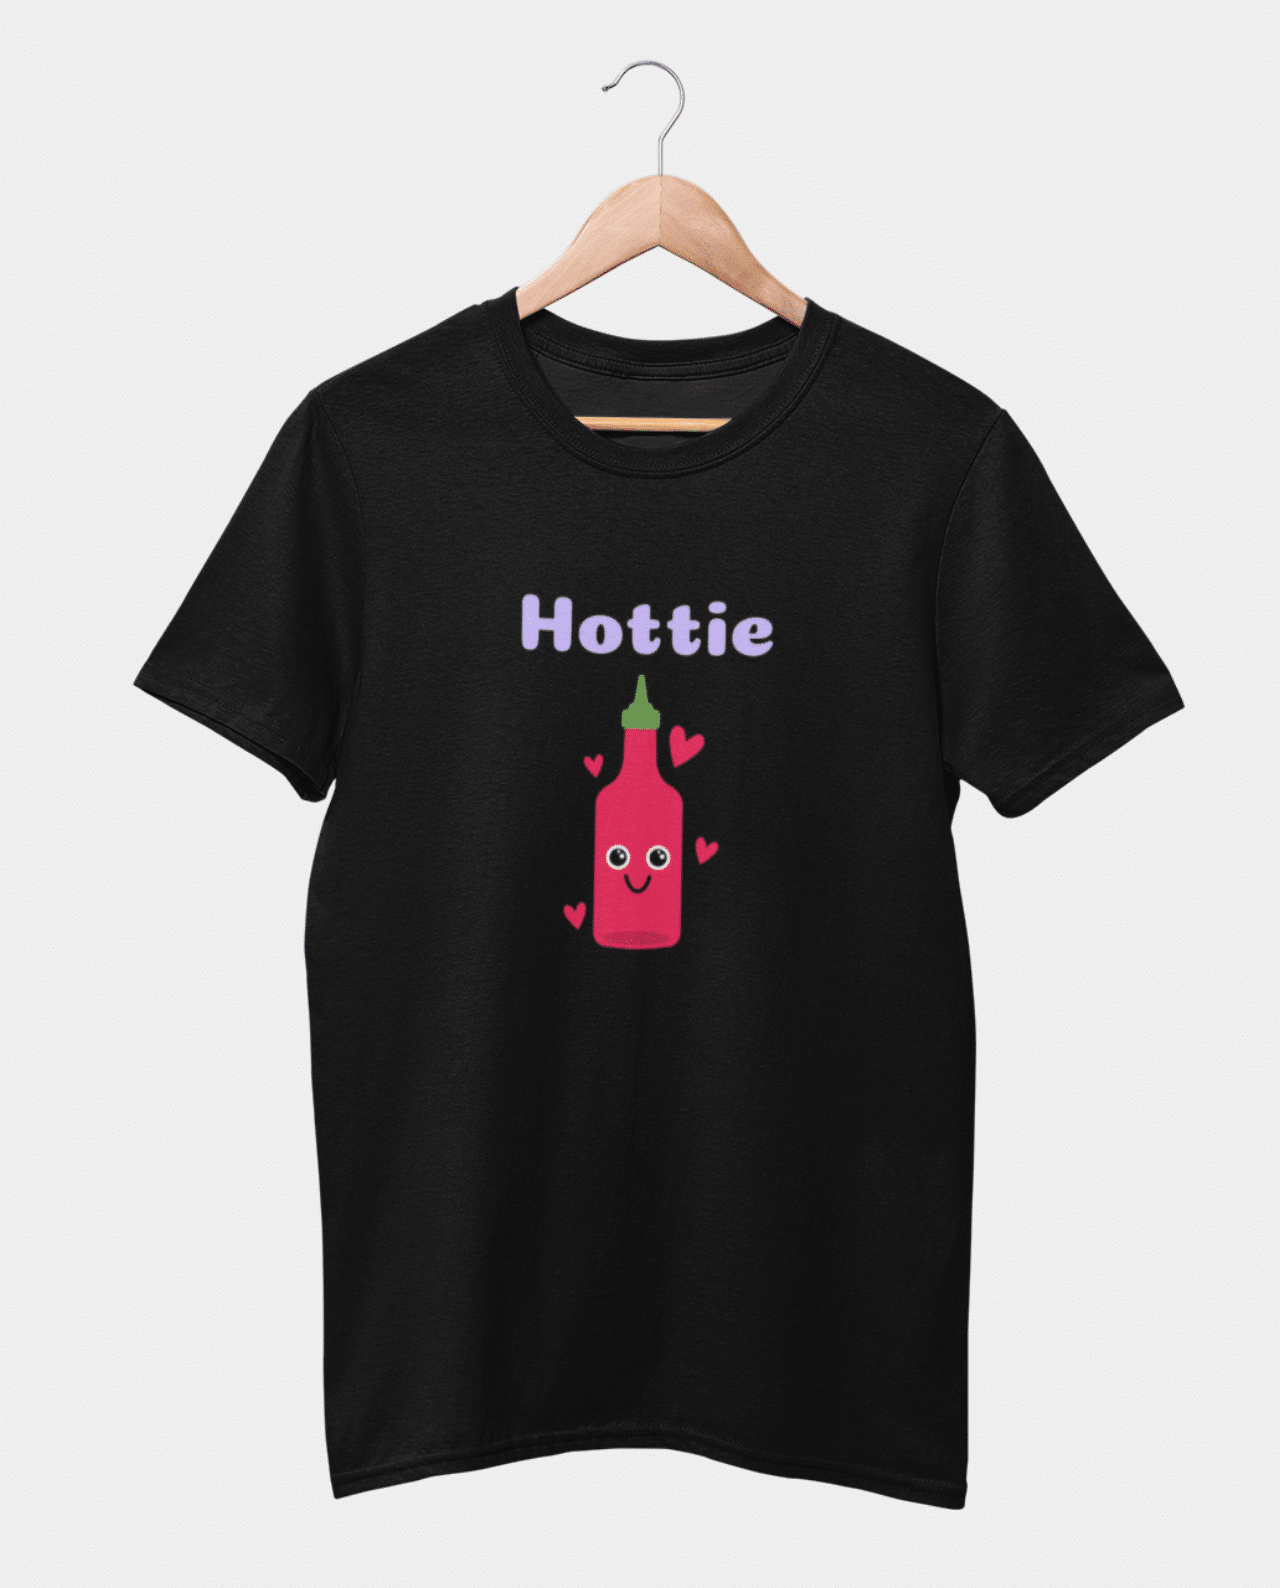 Download Hottie Women's Tshirt - Merchandastic!